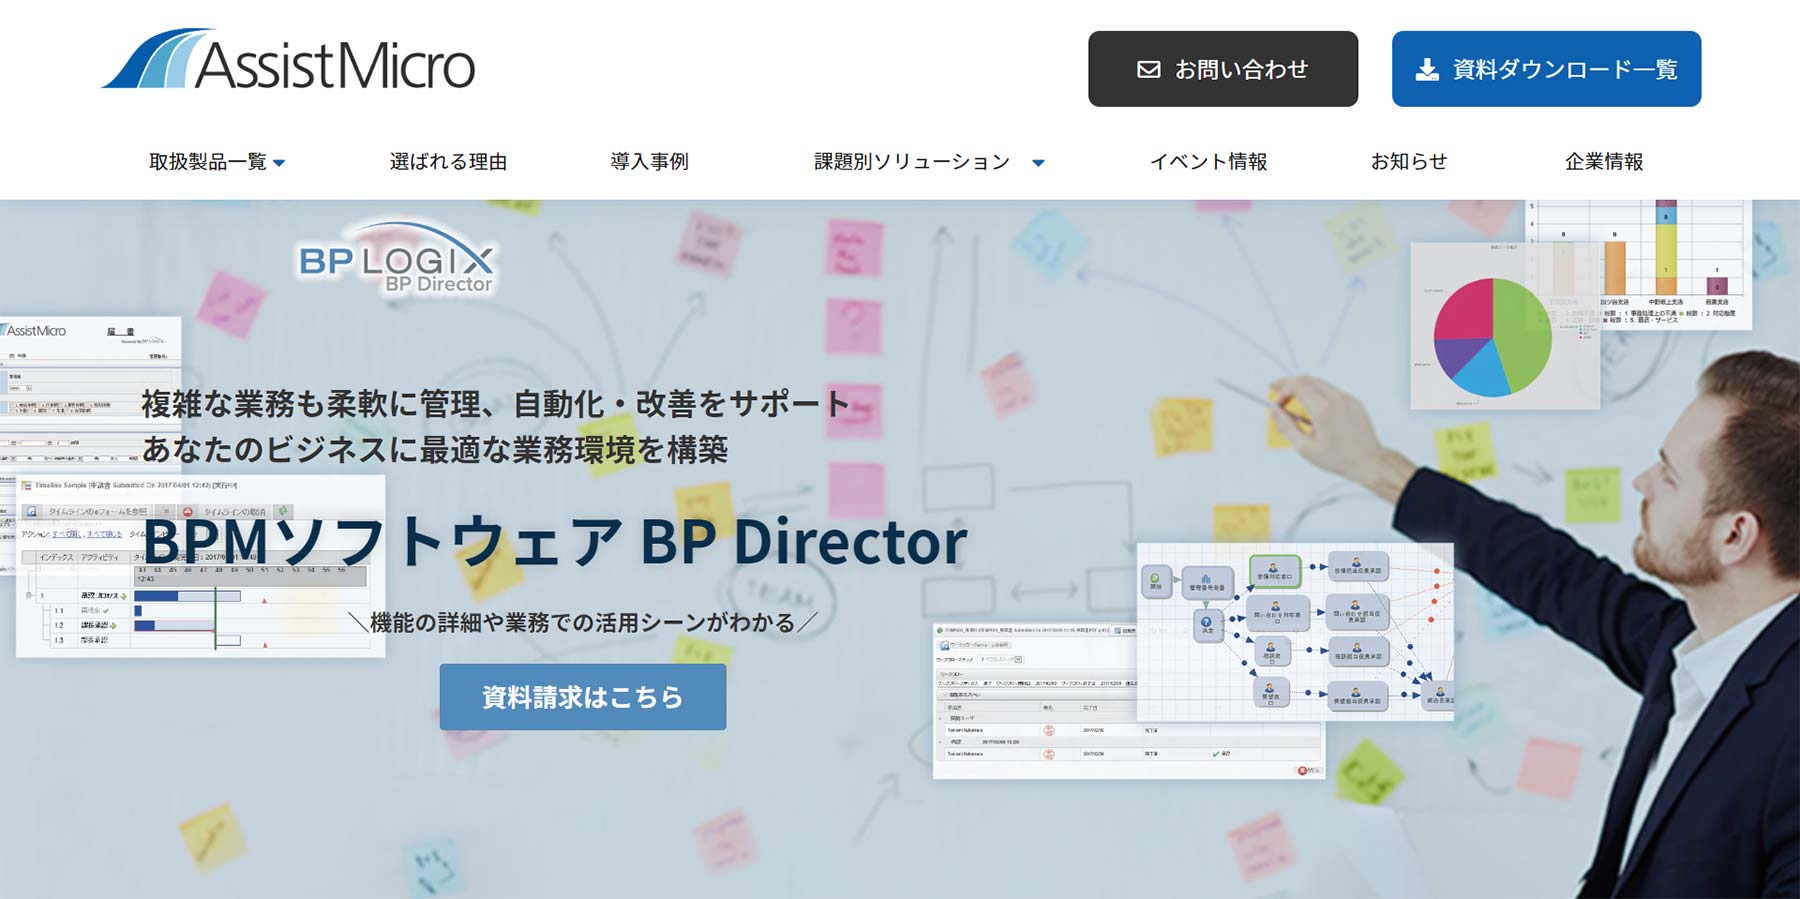 BP Director公式Webサイト